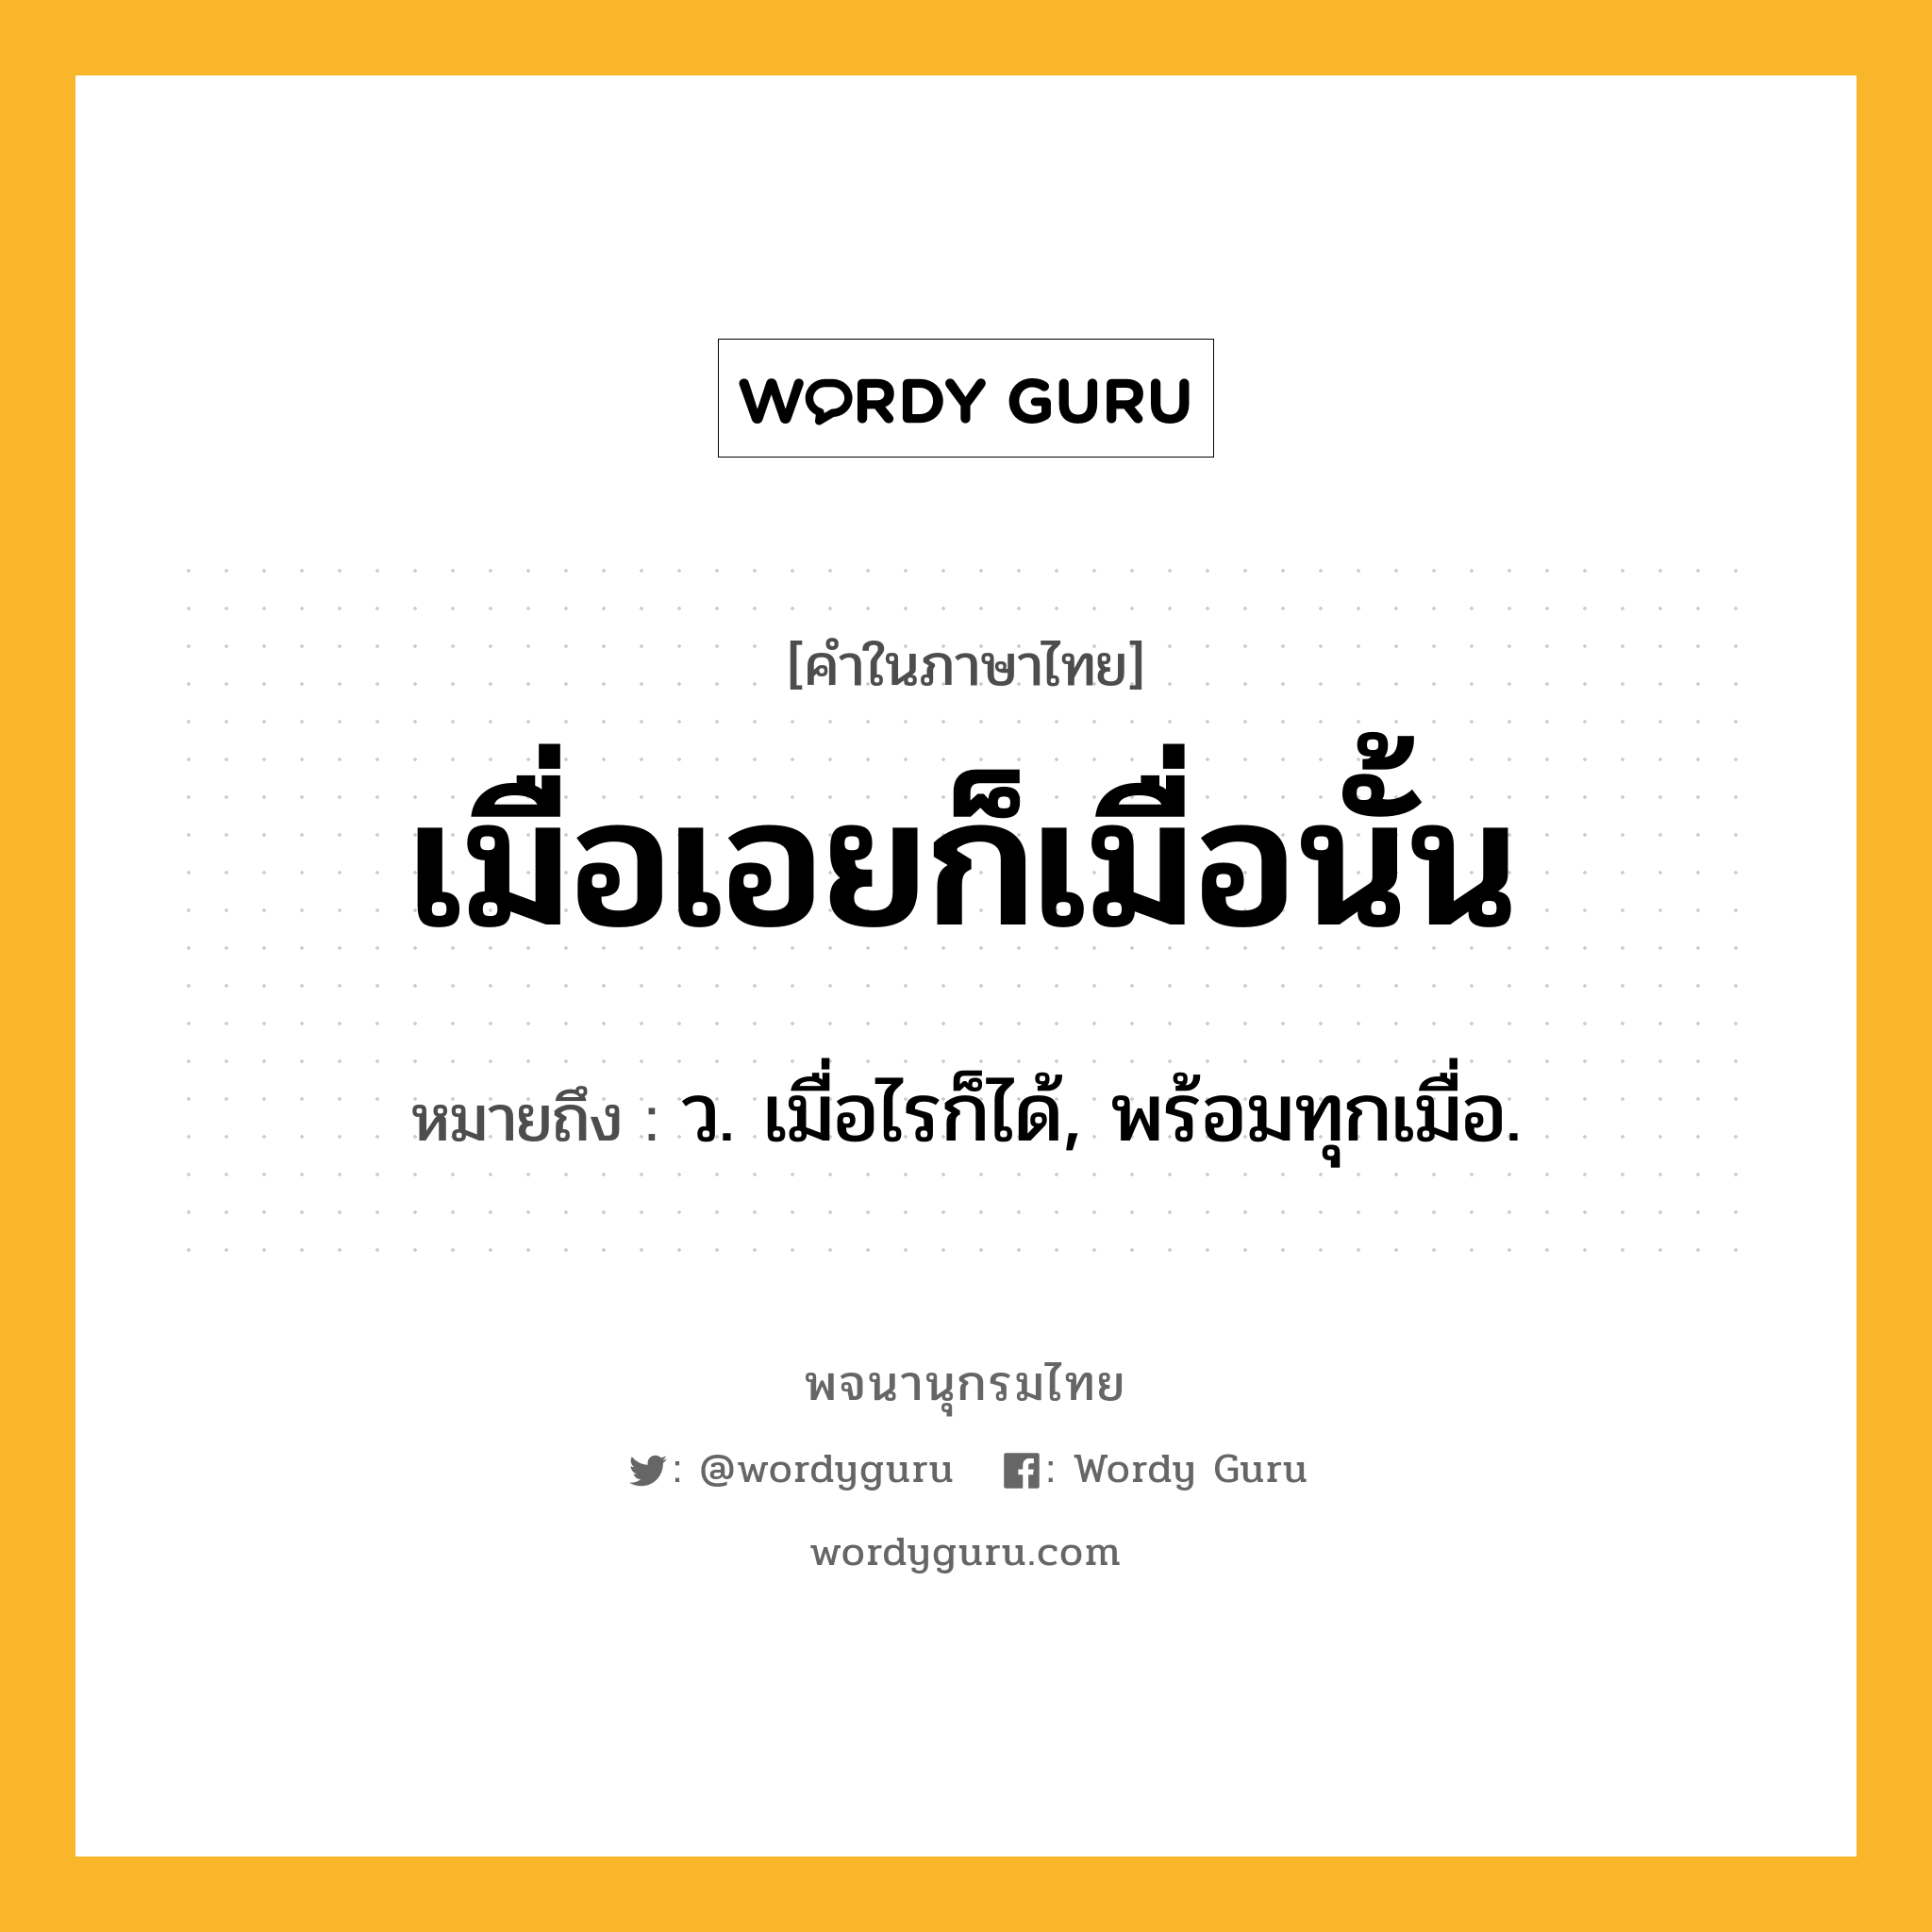 เมื่อเอยก็เมื่อนั้น หมายถึงอะไร?, คำในภาษาไทย เมื่อเอยก็เมื่อนั้น หมายถึง ว. เมื่อไรก็ได้, พร้อมทุกเมื่อ.